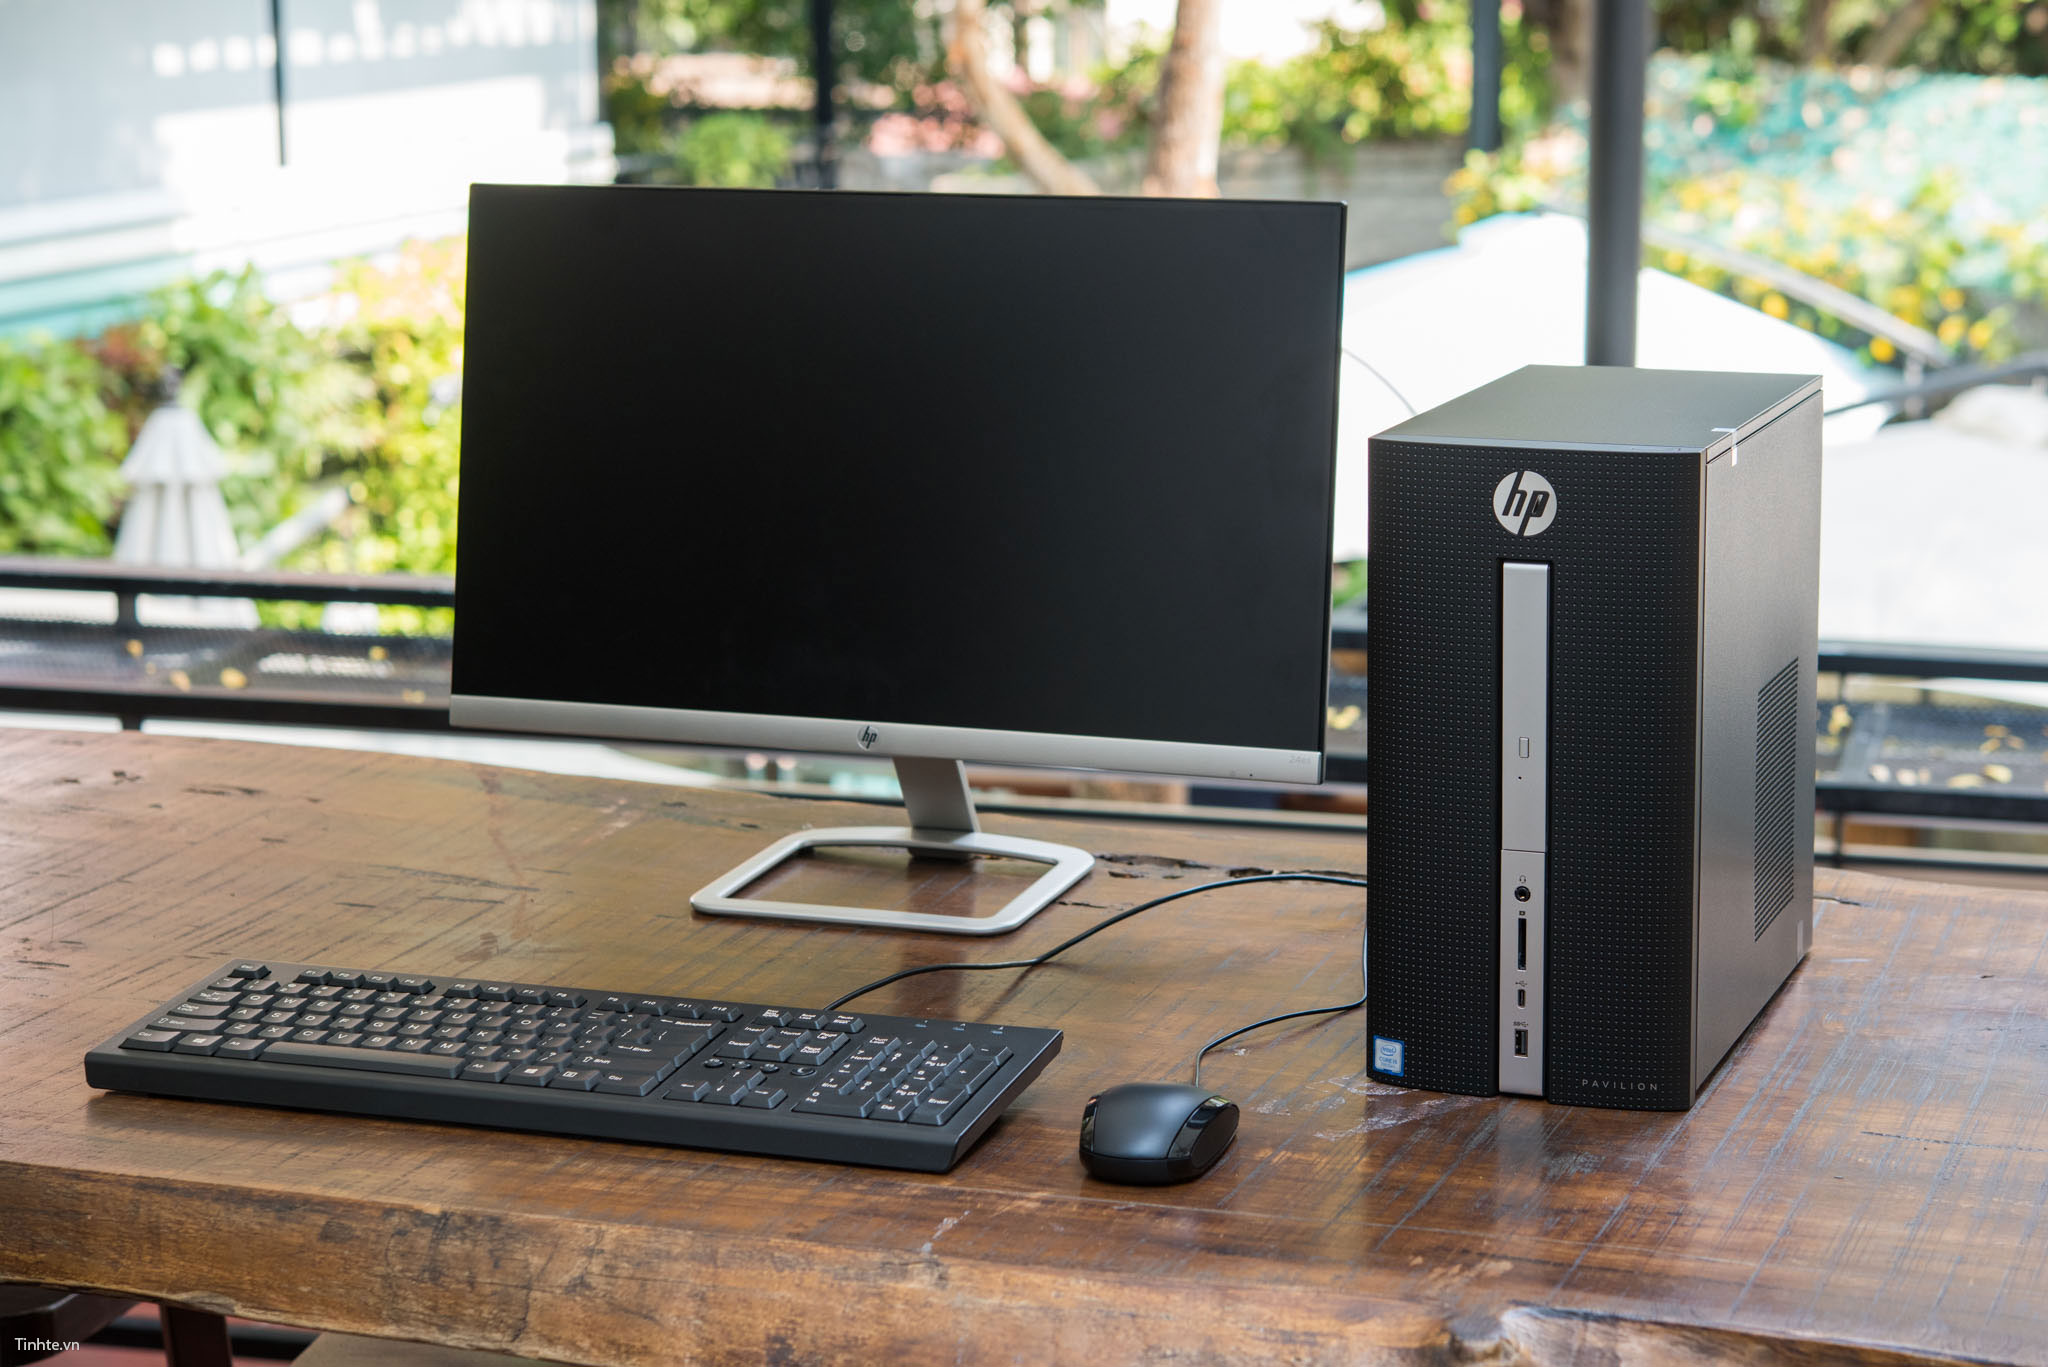 Đánh giá desktop HP Pavilion 570 – Gọn đẹp, tiết kiệm năng lượng, giá 12,3  triệu đồng